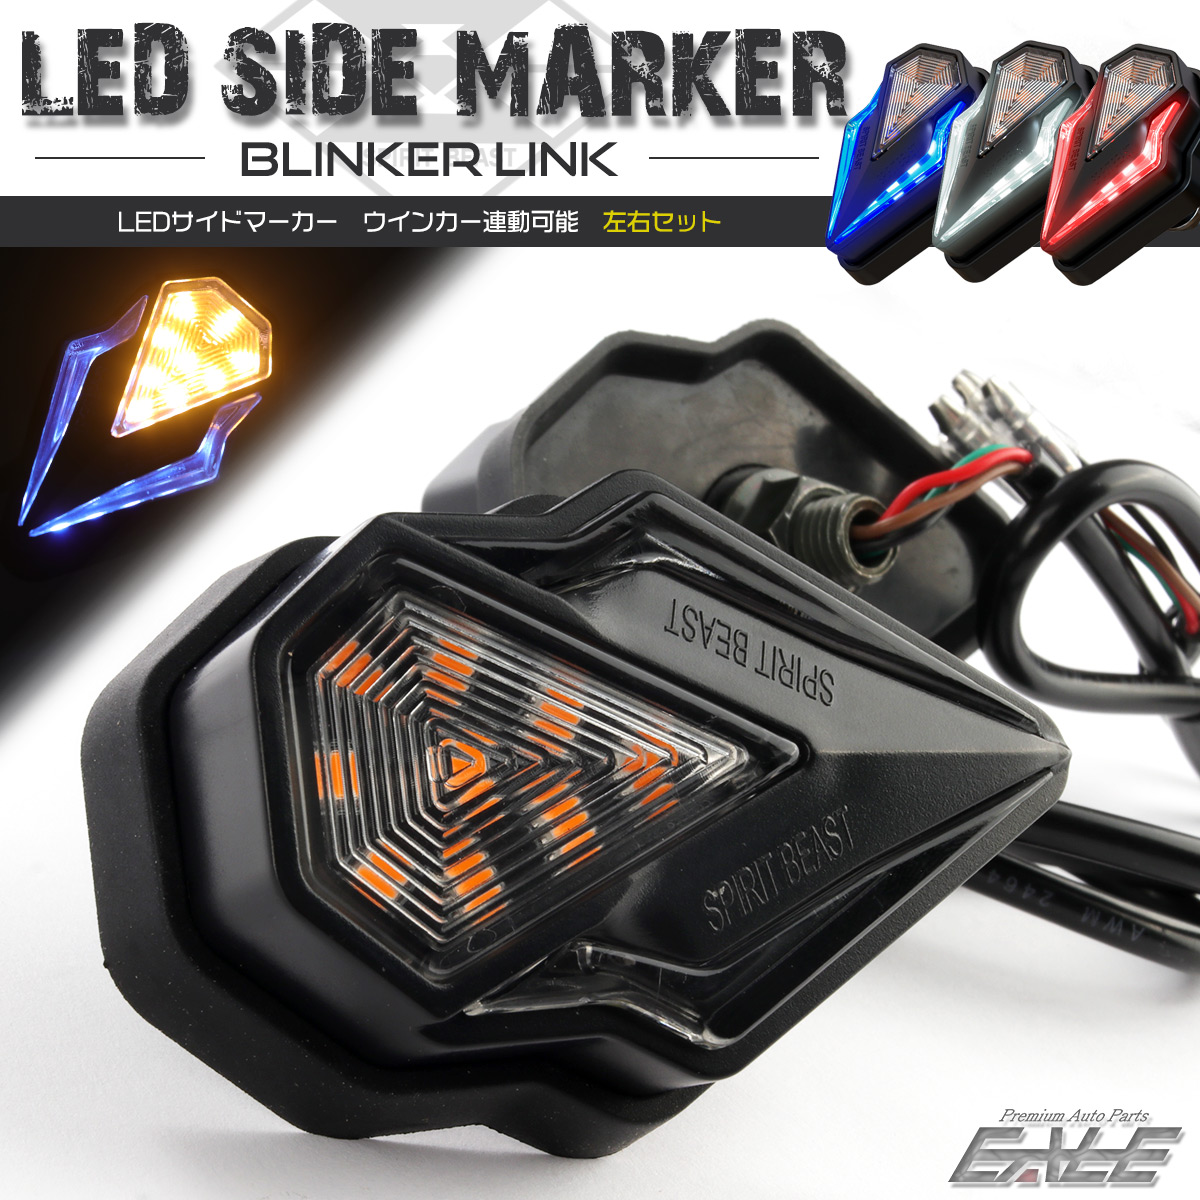 LED サイドマーカー ウインカー連動可 デイライト DRL マーカーランプ 3色 バイク 汎用 2個セット F-505